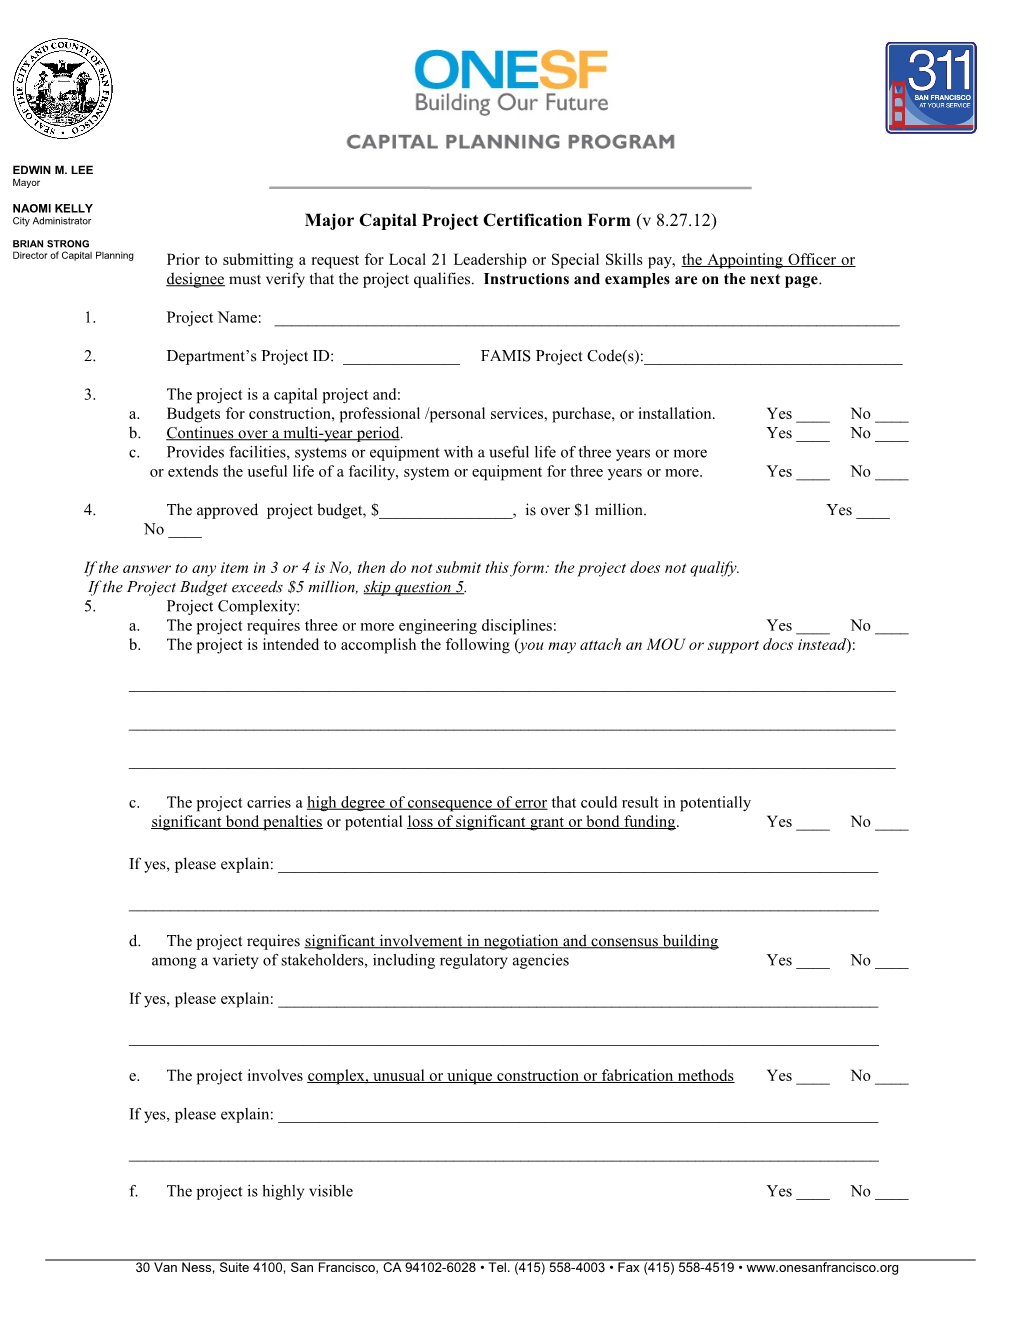 Major Capital Project Certification Form (V 8.27.12)